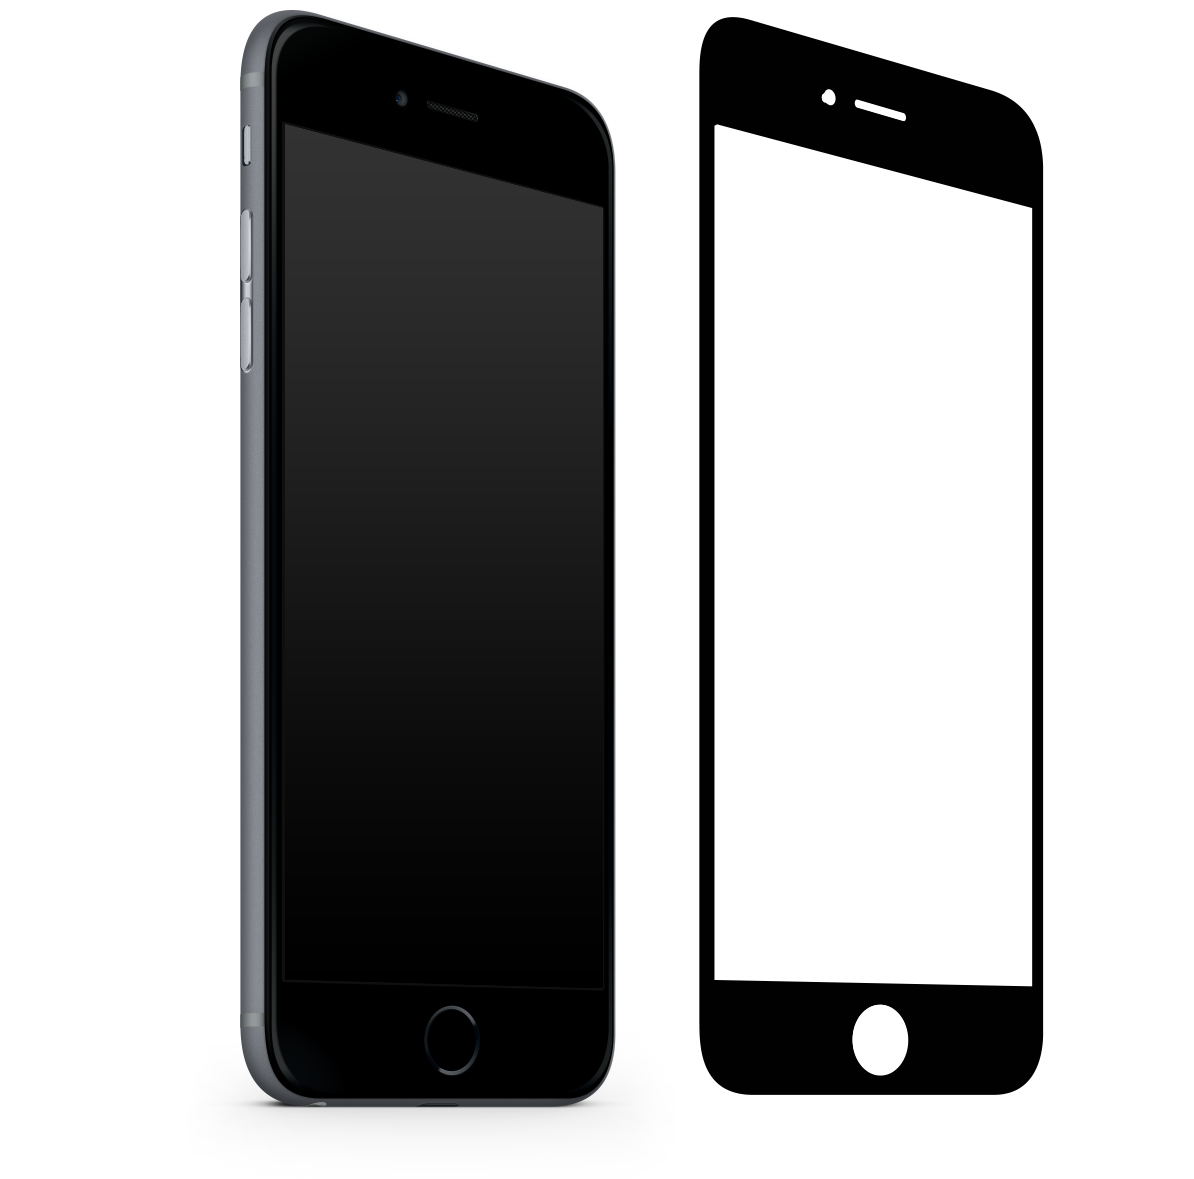 Apple Iphone 6s Plus Black Air Defense